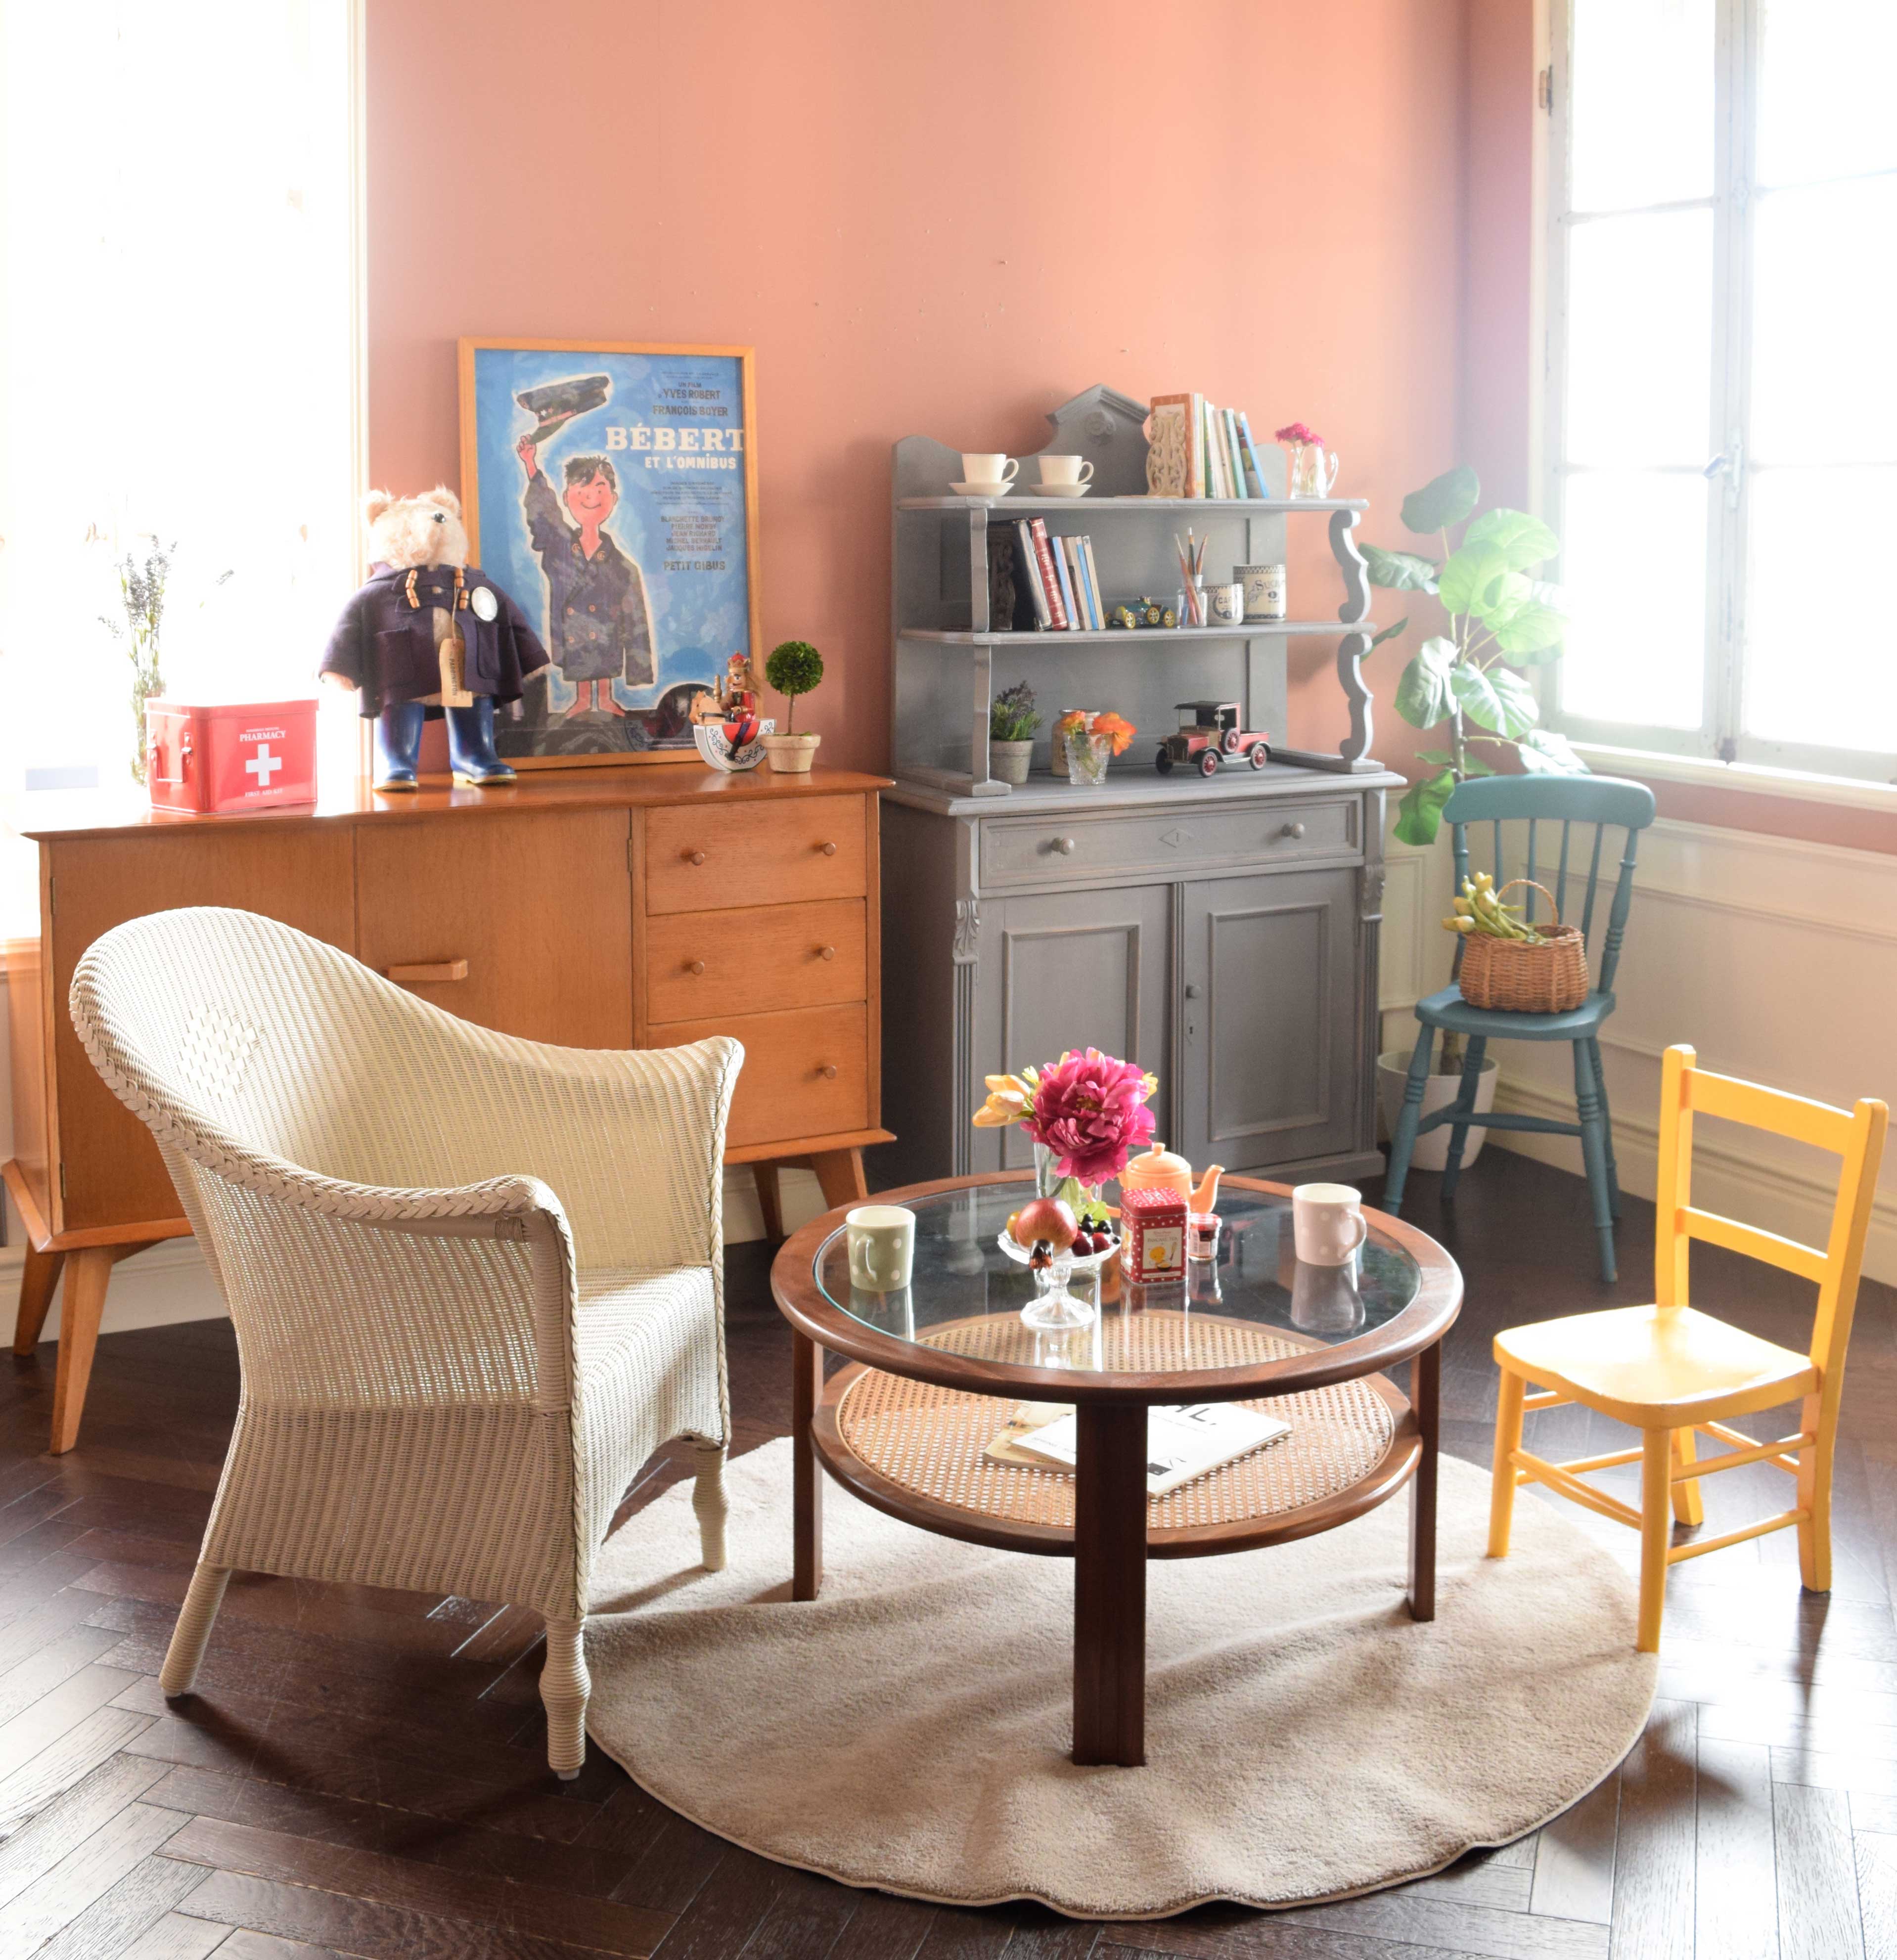 ナチュラルカントリーのリビング | 丸いコーヒーテーブルを囲んで思い出話を楽しむ色の部屋